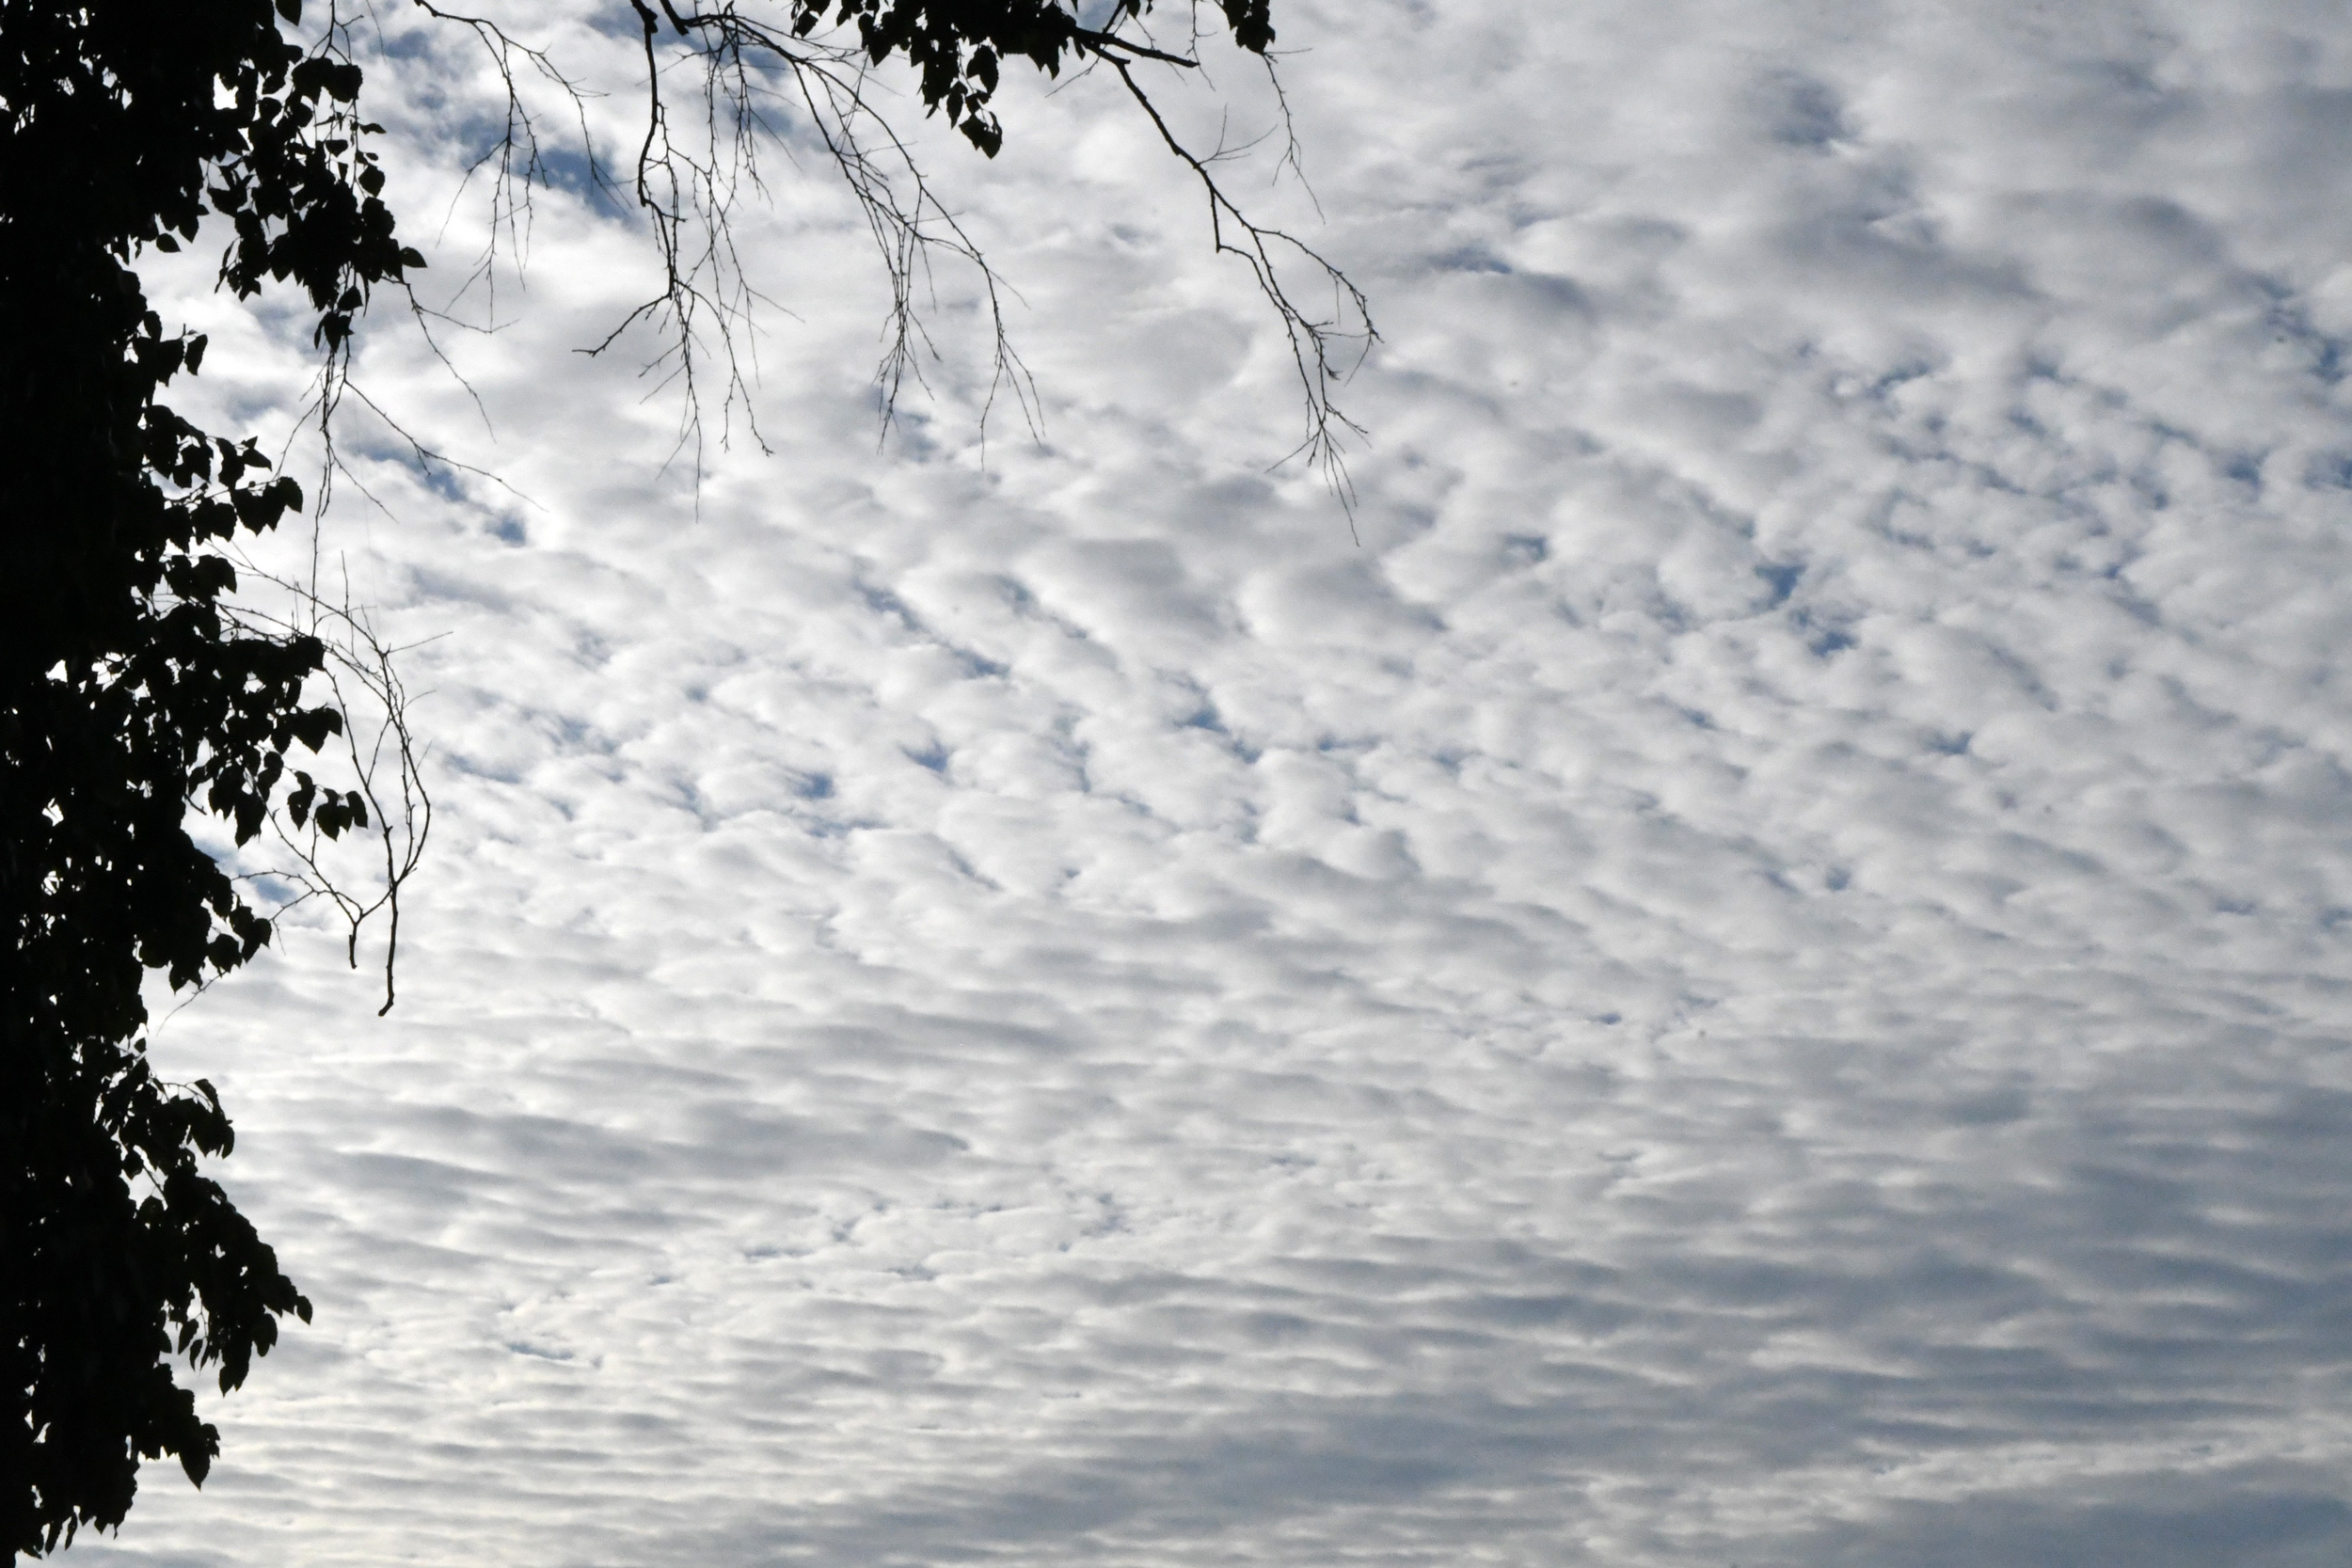 A mackerel sky, Prospect Park